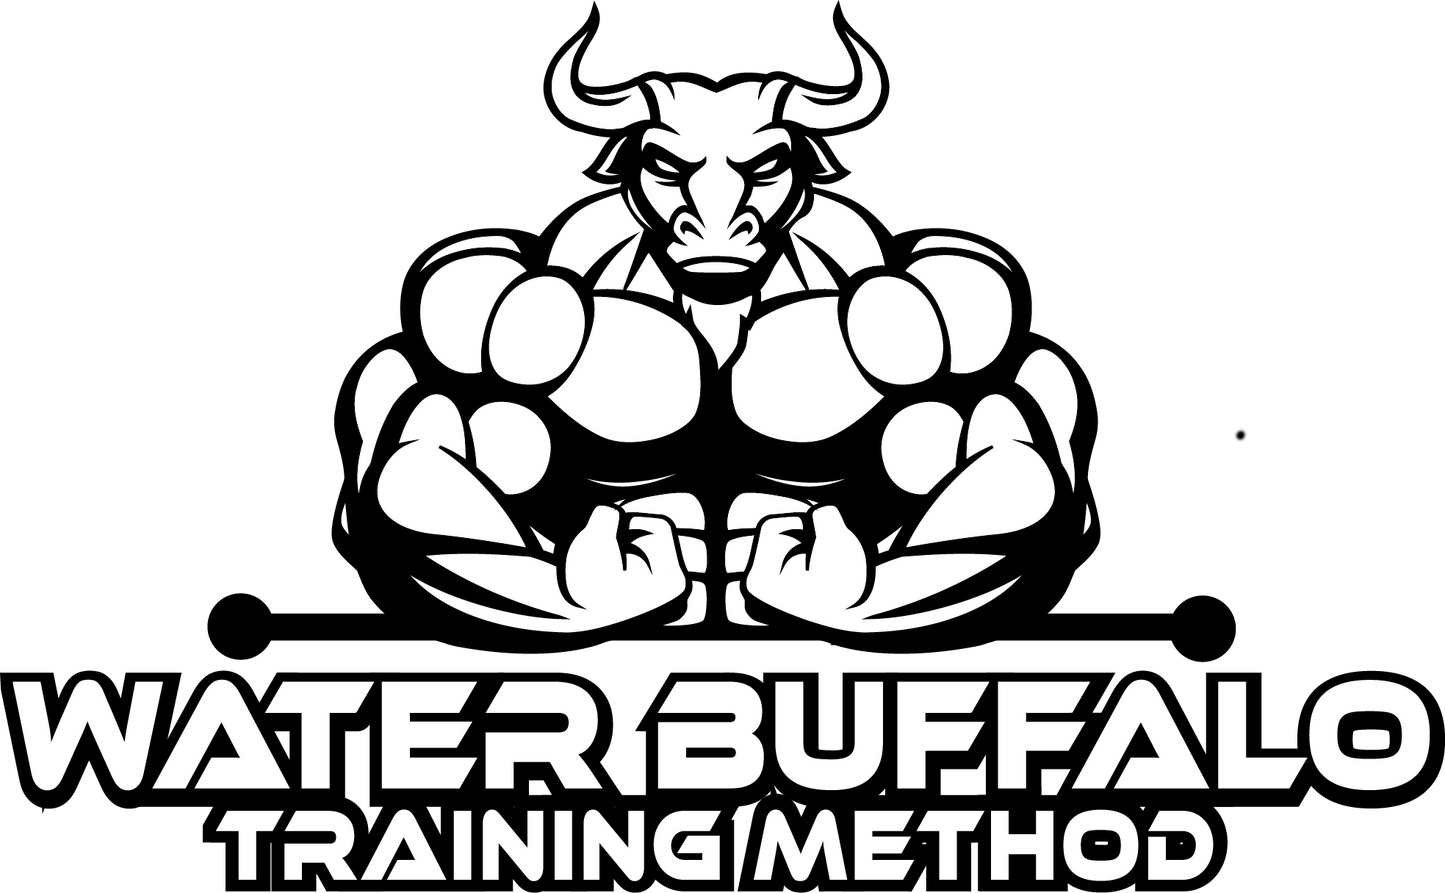 Water Buffalo Training Method: Phase 2